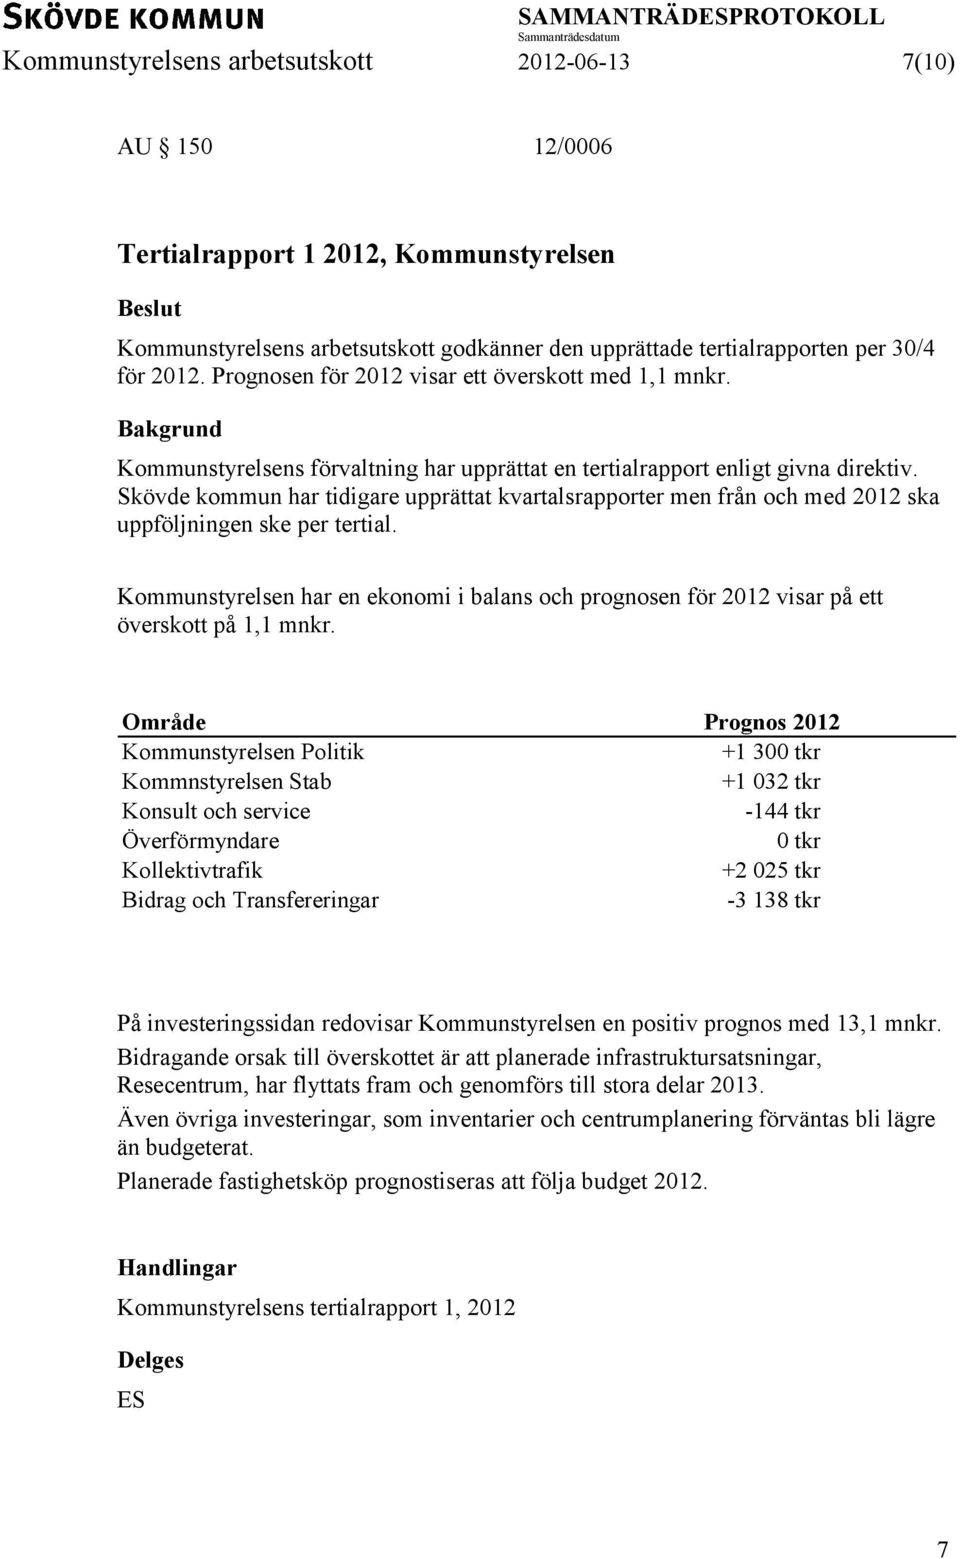 Skövde kommun har tidigare upprättat kvartalsrapporter men från och med 2012 ska uppföljningen ske per tertial.